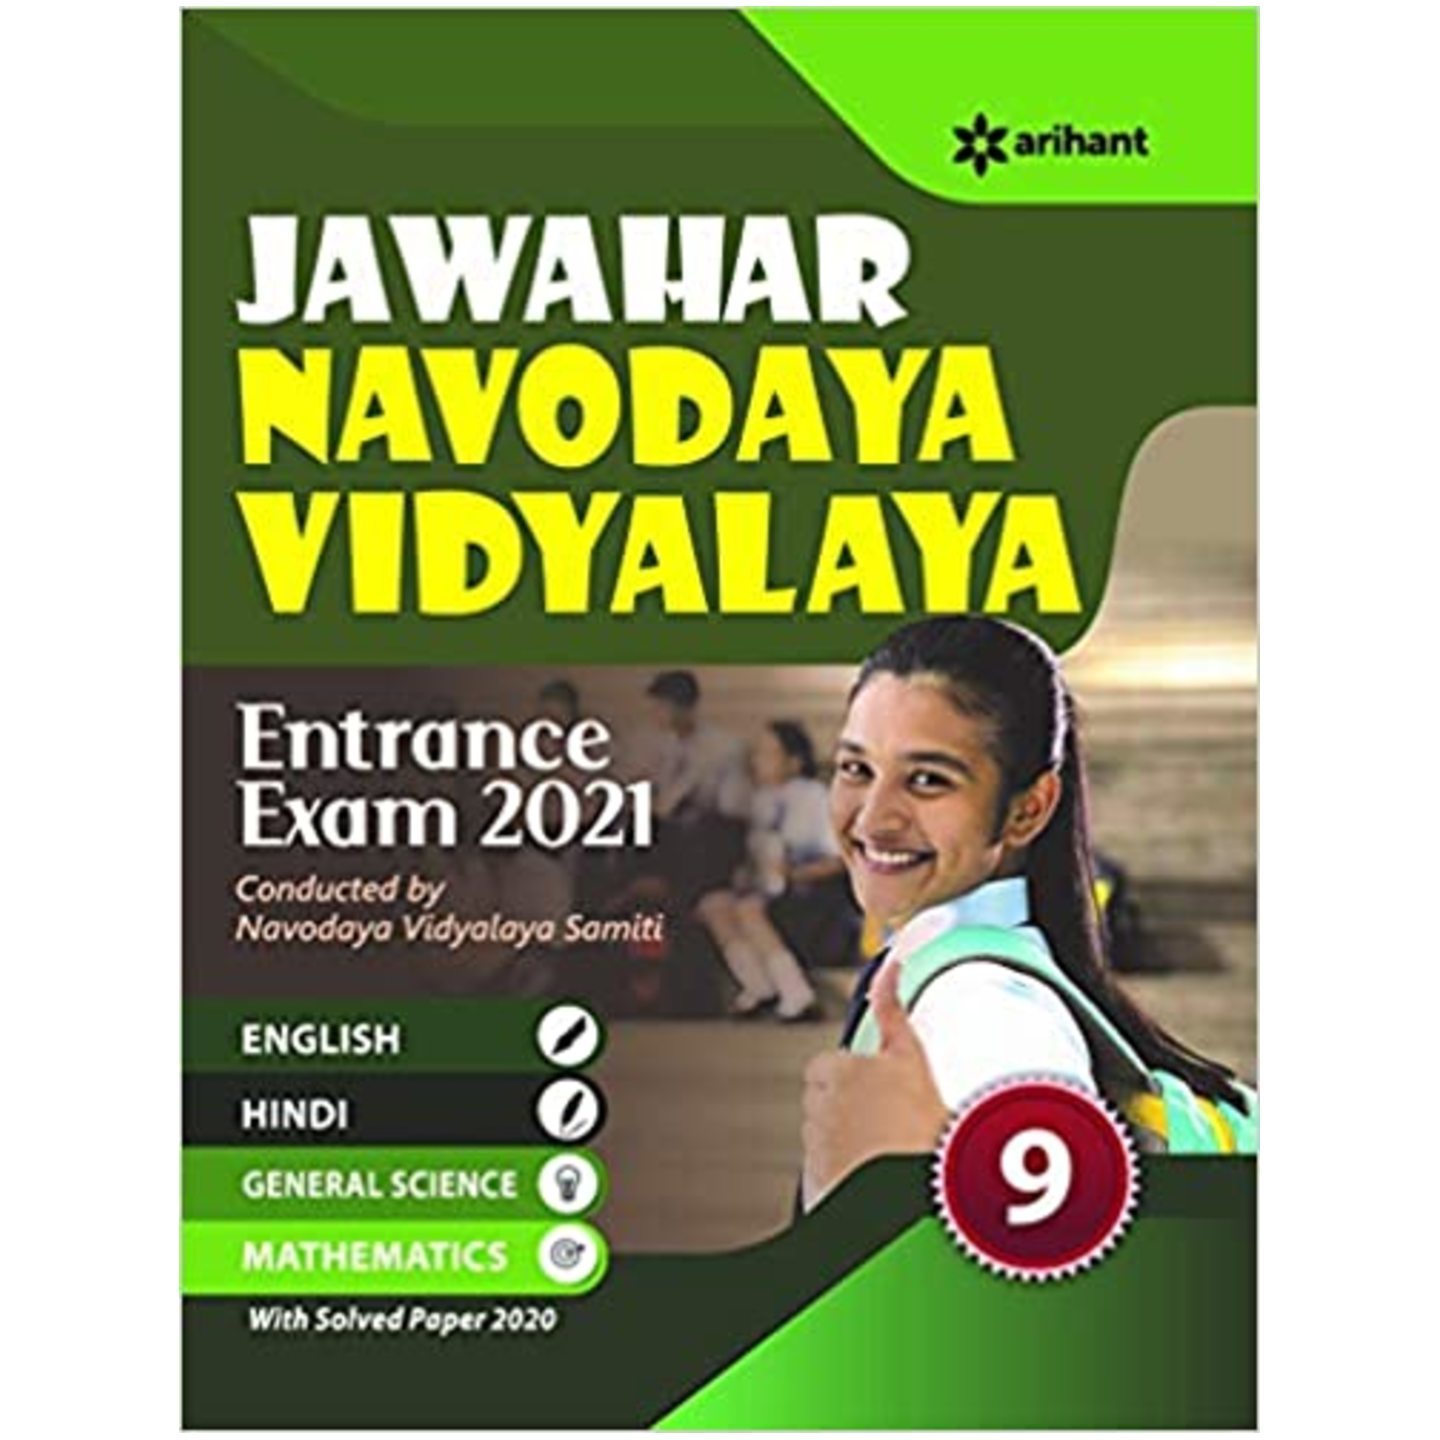 ARIHANT JNV Entrance Exam Book for Class IX Jawahar Navodaya Vidyalaya by Arihant Publication with Solved Paper 2020